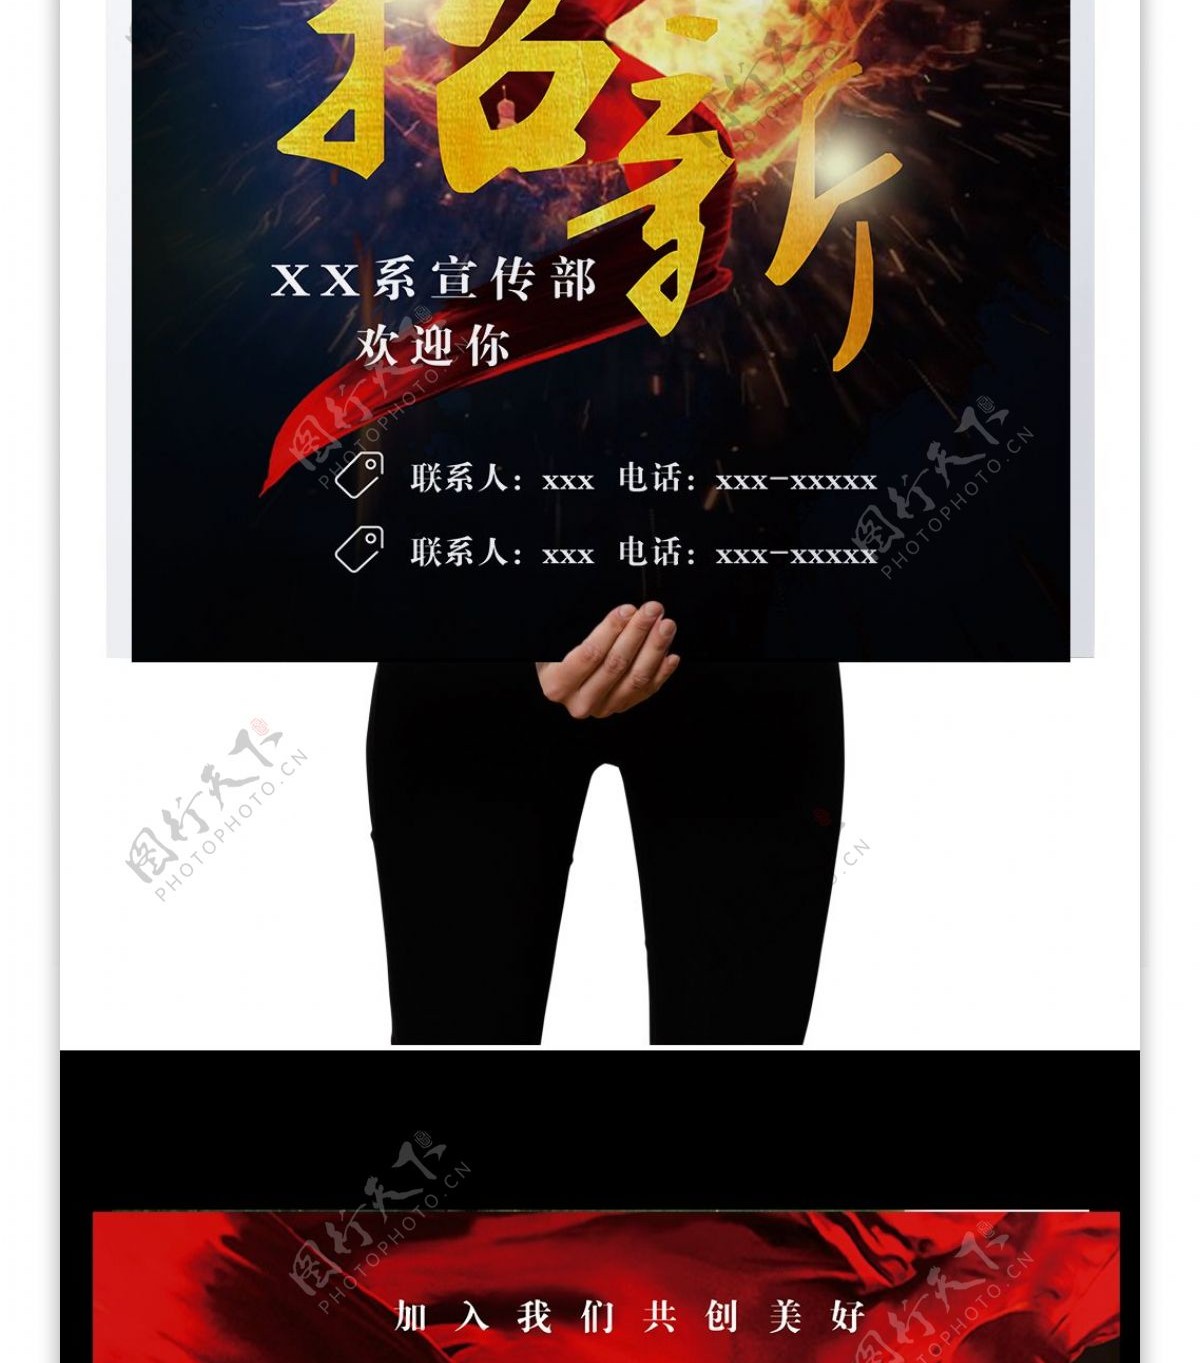 社团招新开学季宣传单红旗炫酷蓝黑色海报